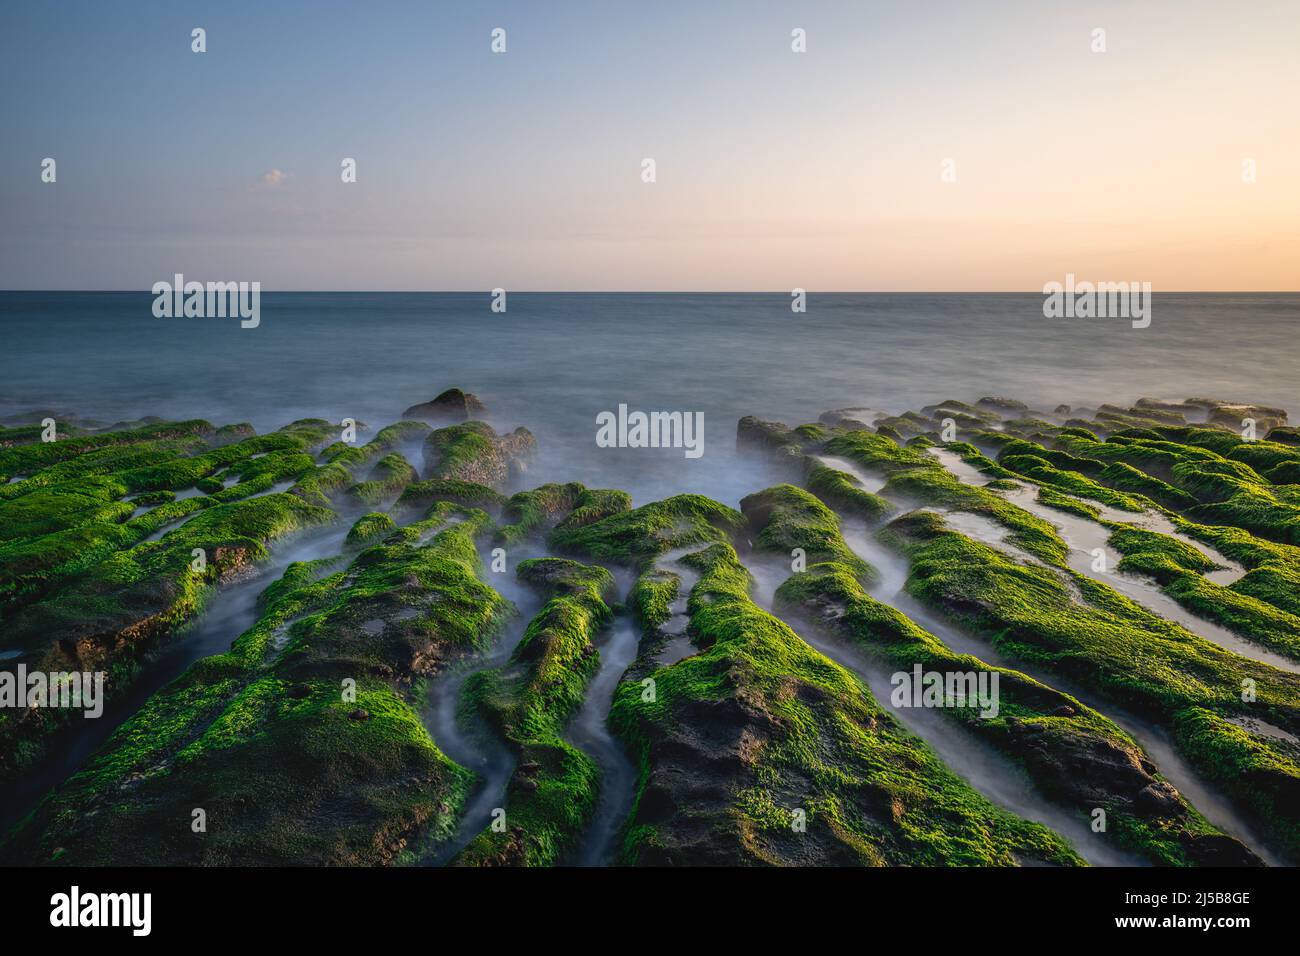 Amanecer en laomei arrecife verde, costa norte Foto de stock